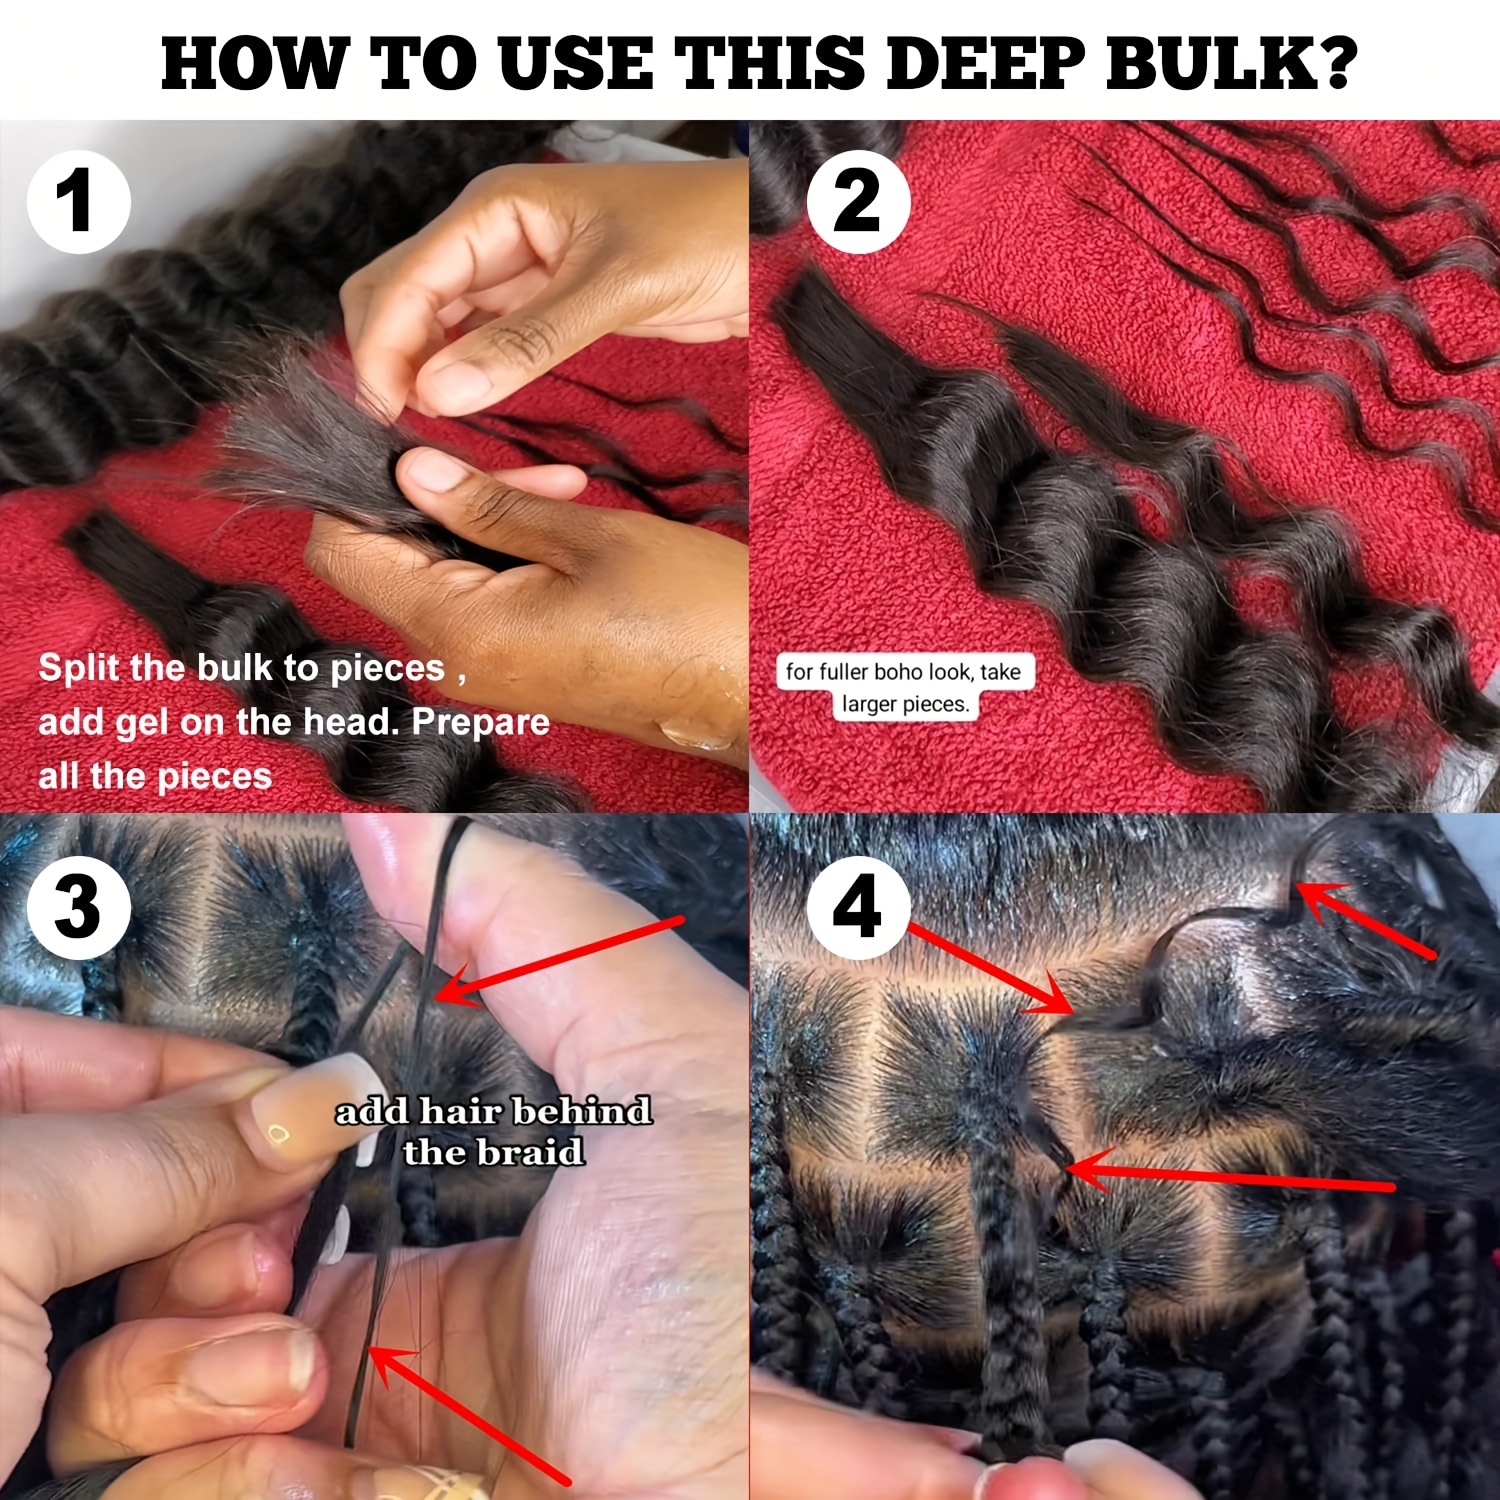 Deep Wave Bulk Human Hair for Braiding No Weft 100g (1Pack-2Bundles) 100%  Unprocessed Brazilian Virgin Human Hair Extensions Human Braiding Hair For